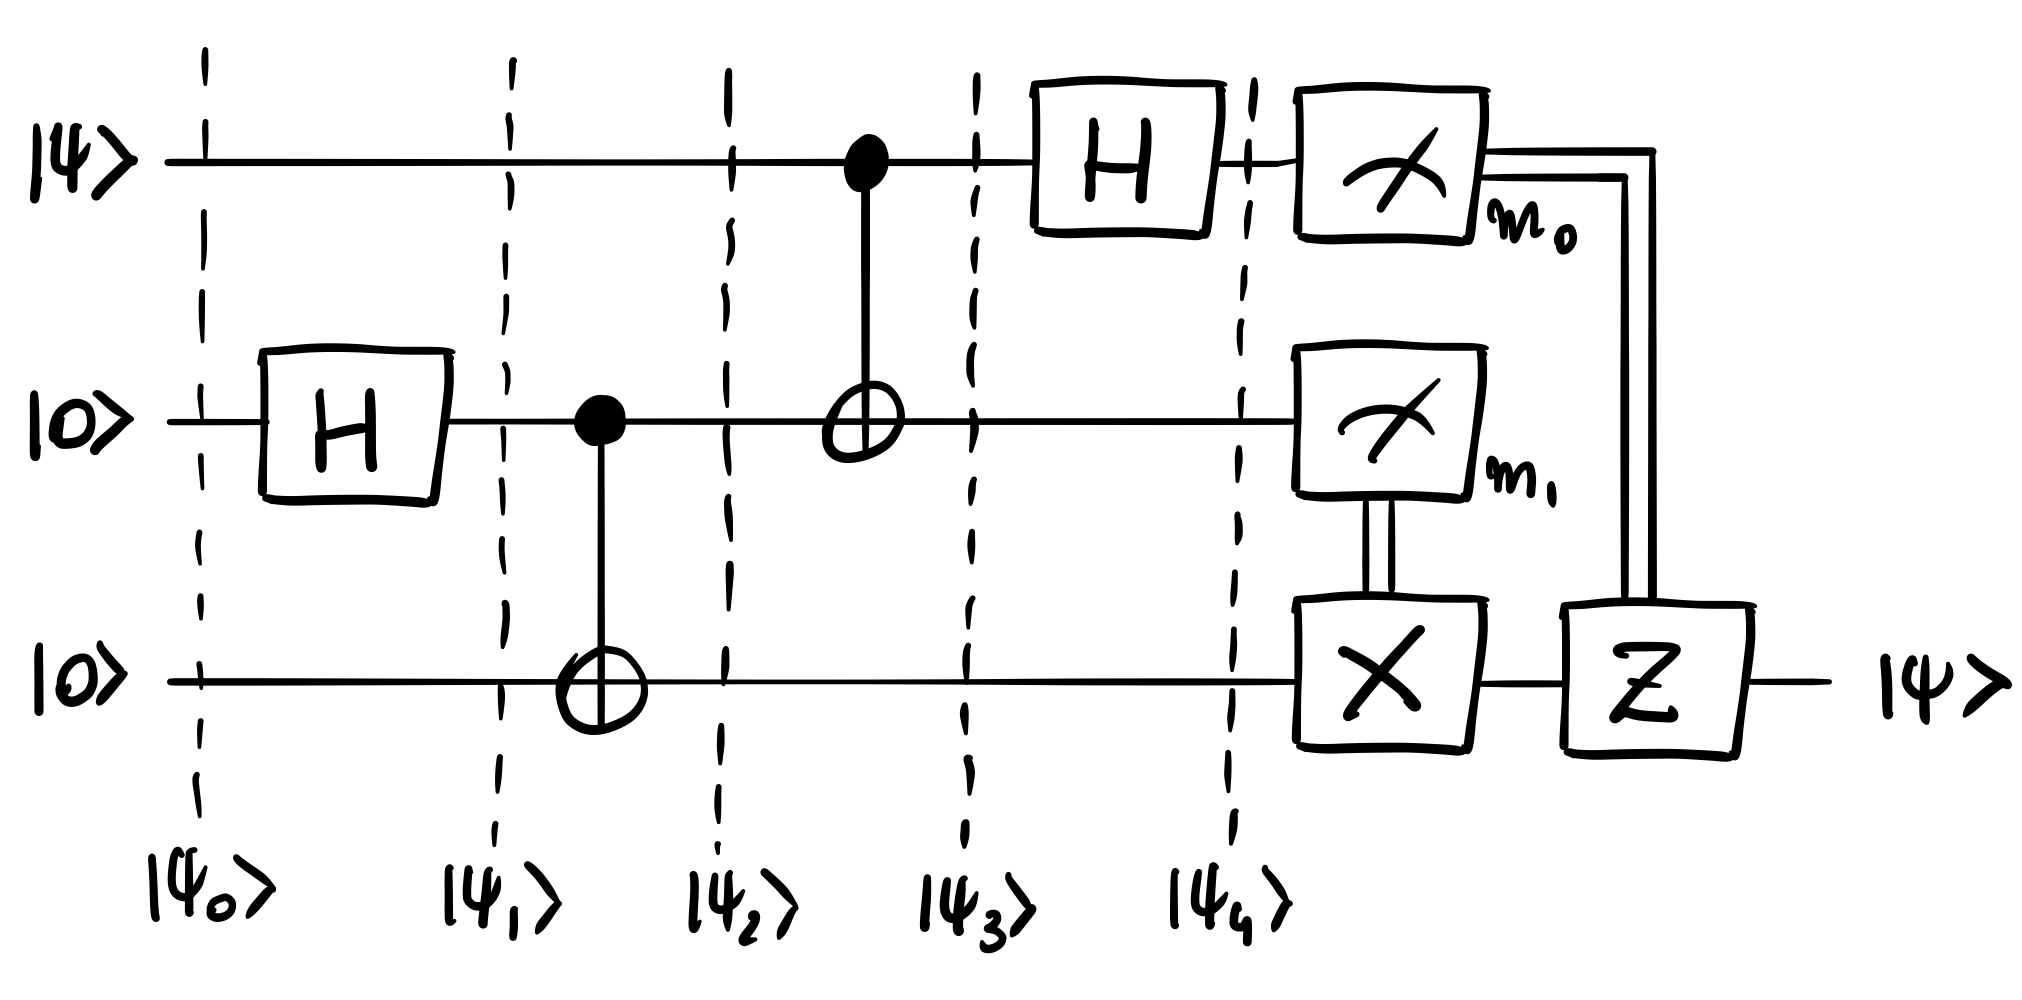 Teleportation quantum circuit